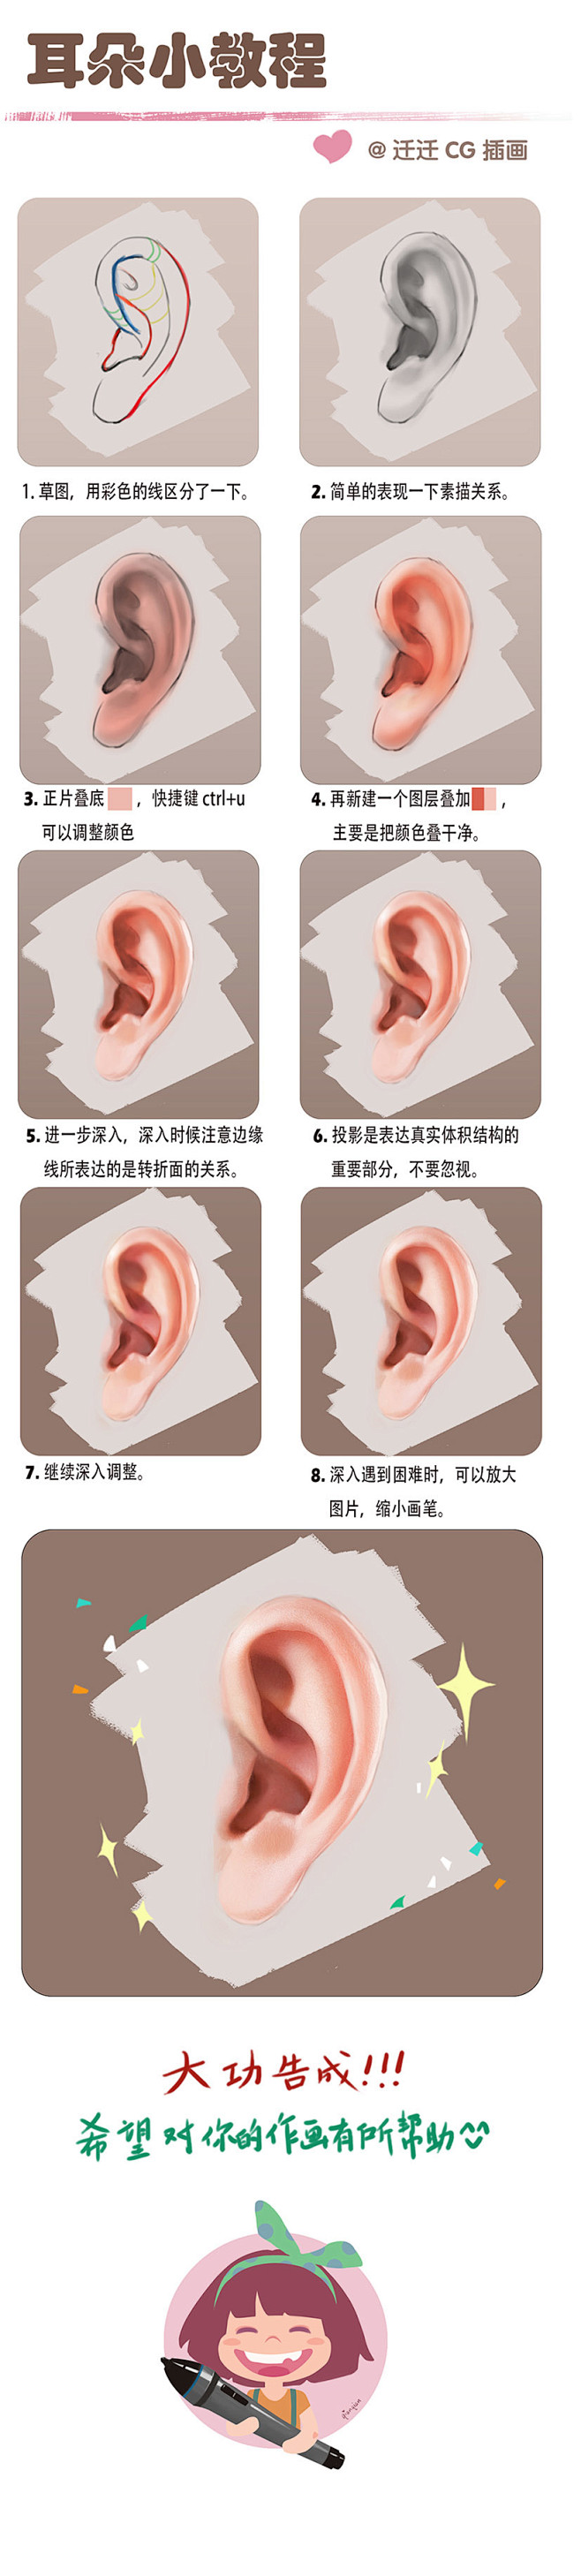 耳朵的小教程_火熊网CG艺术文化交流平台